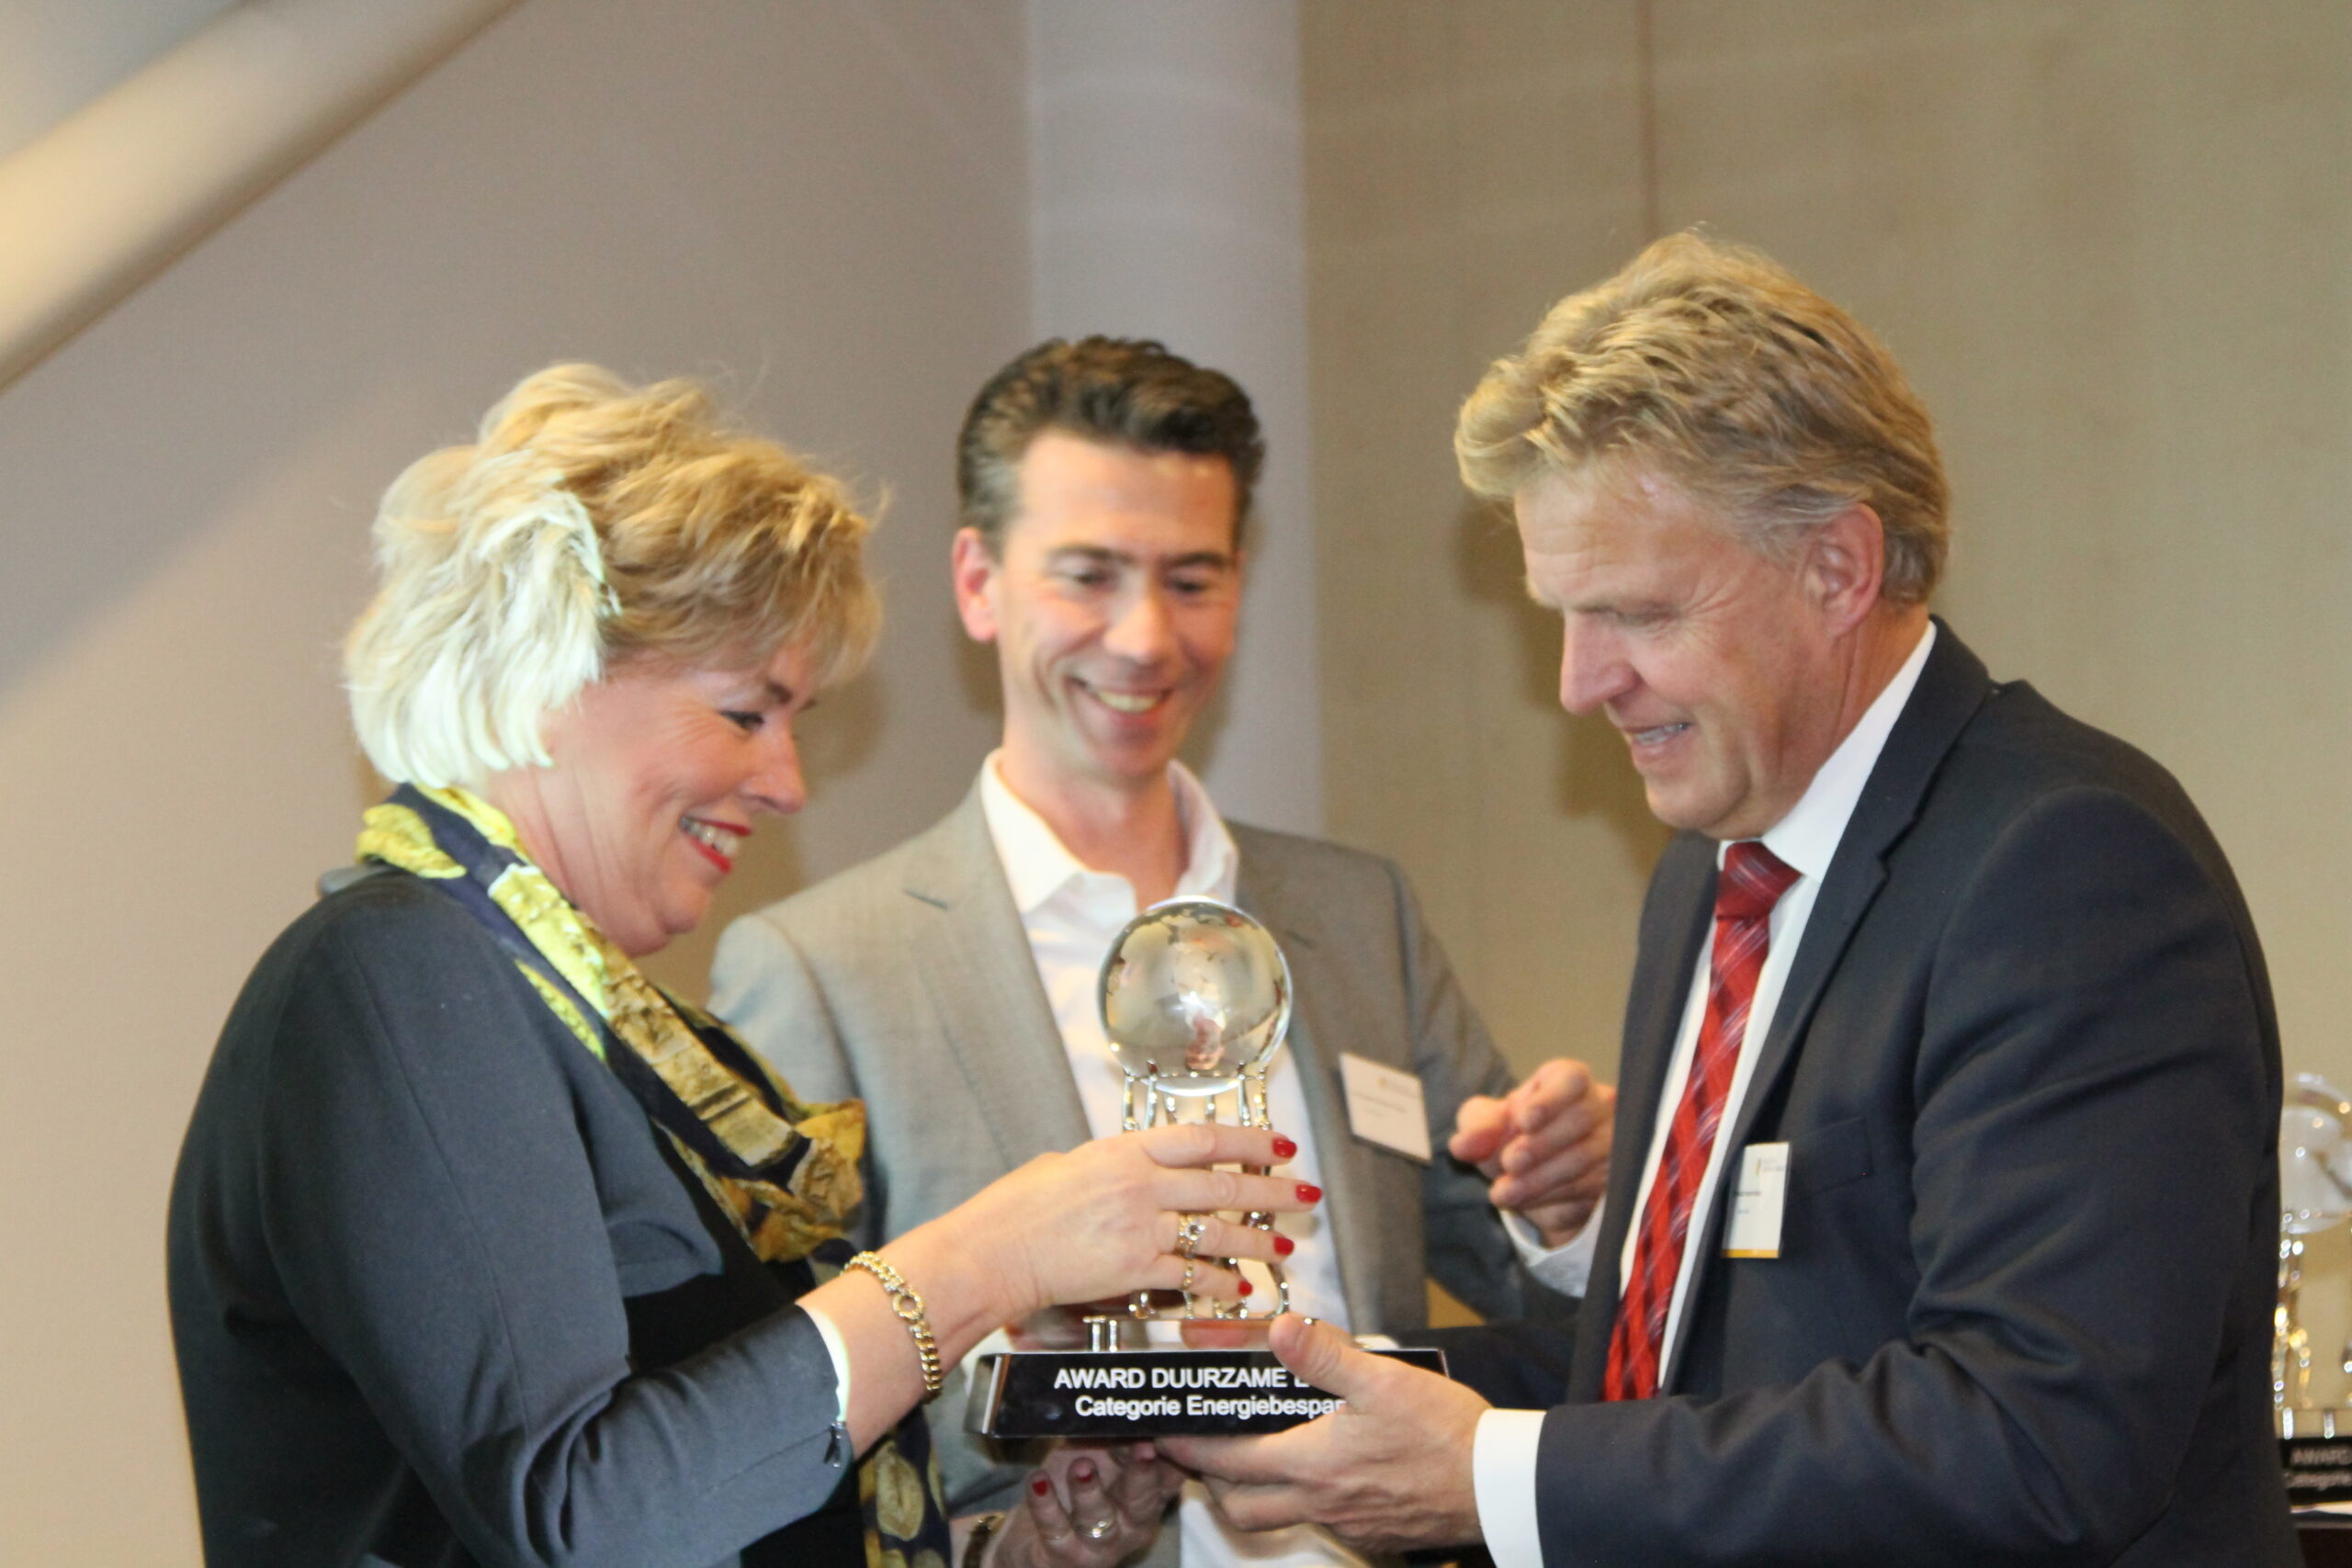 Overhandiging Award Energiebesparing Gebouwde Omgeving 2013 aan wethouder mevrouw De Joode (gemeente Blaricum) door gedeputeerde Jaap Bond